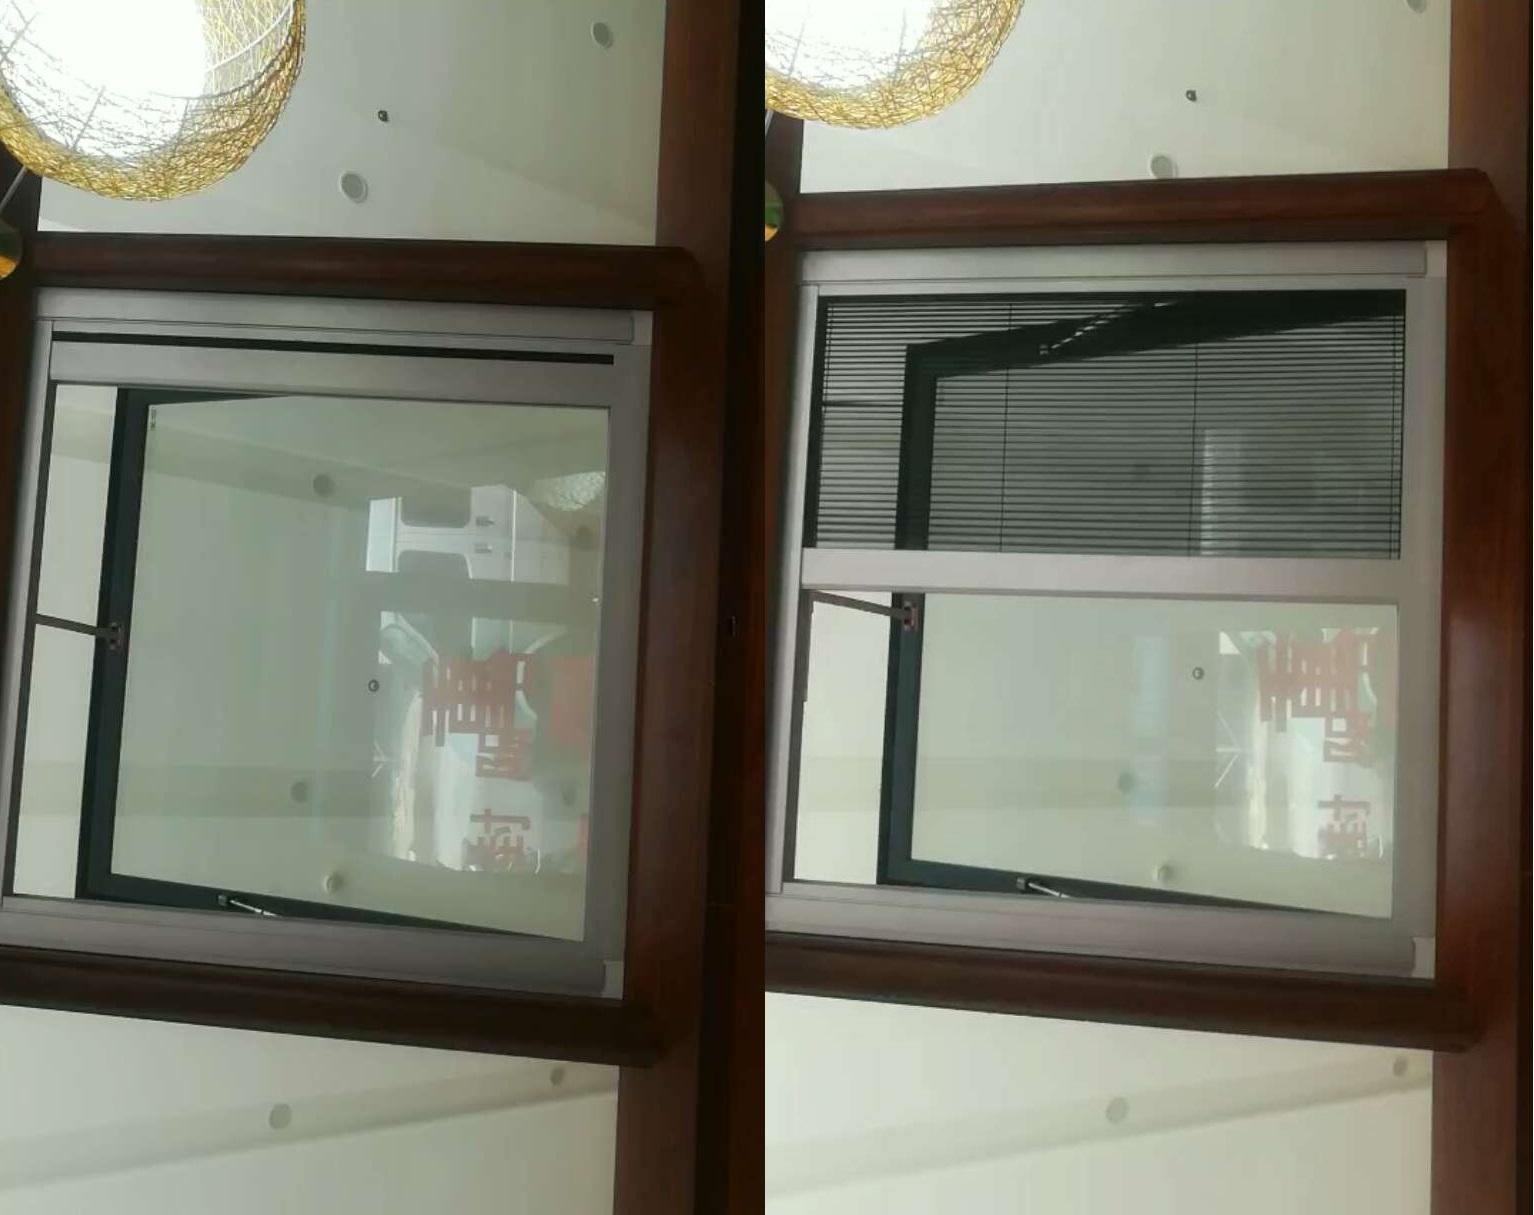 电动沙窗兮鸿智能遥控窗纱用于屋顶天窗和幕墙窗